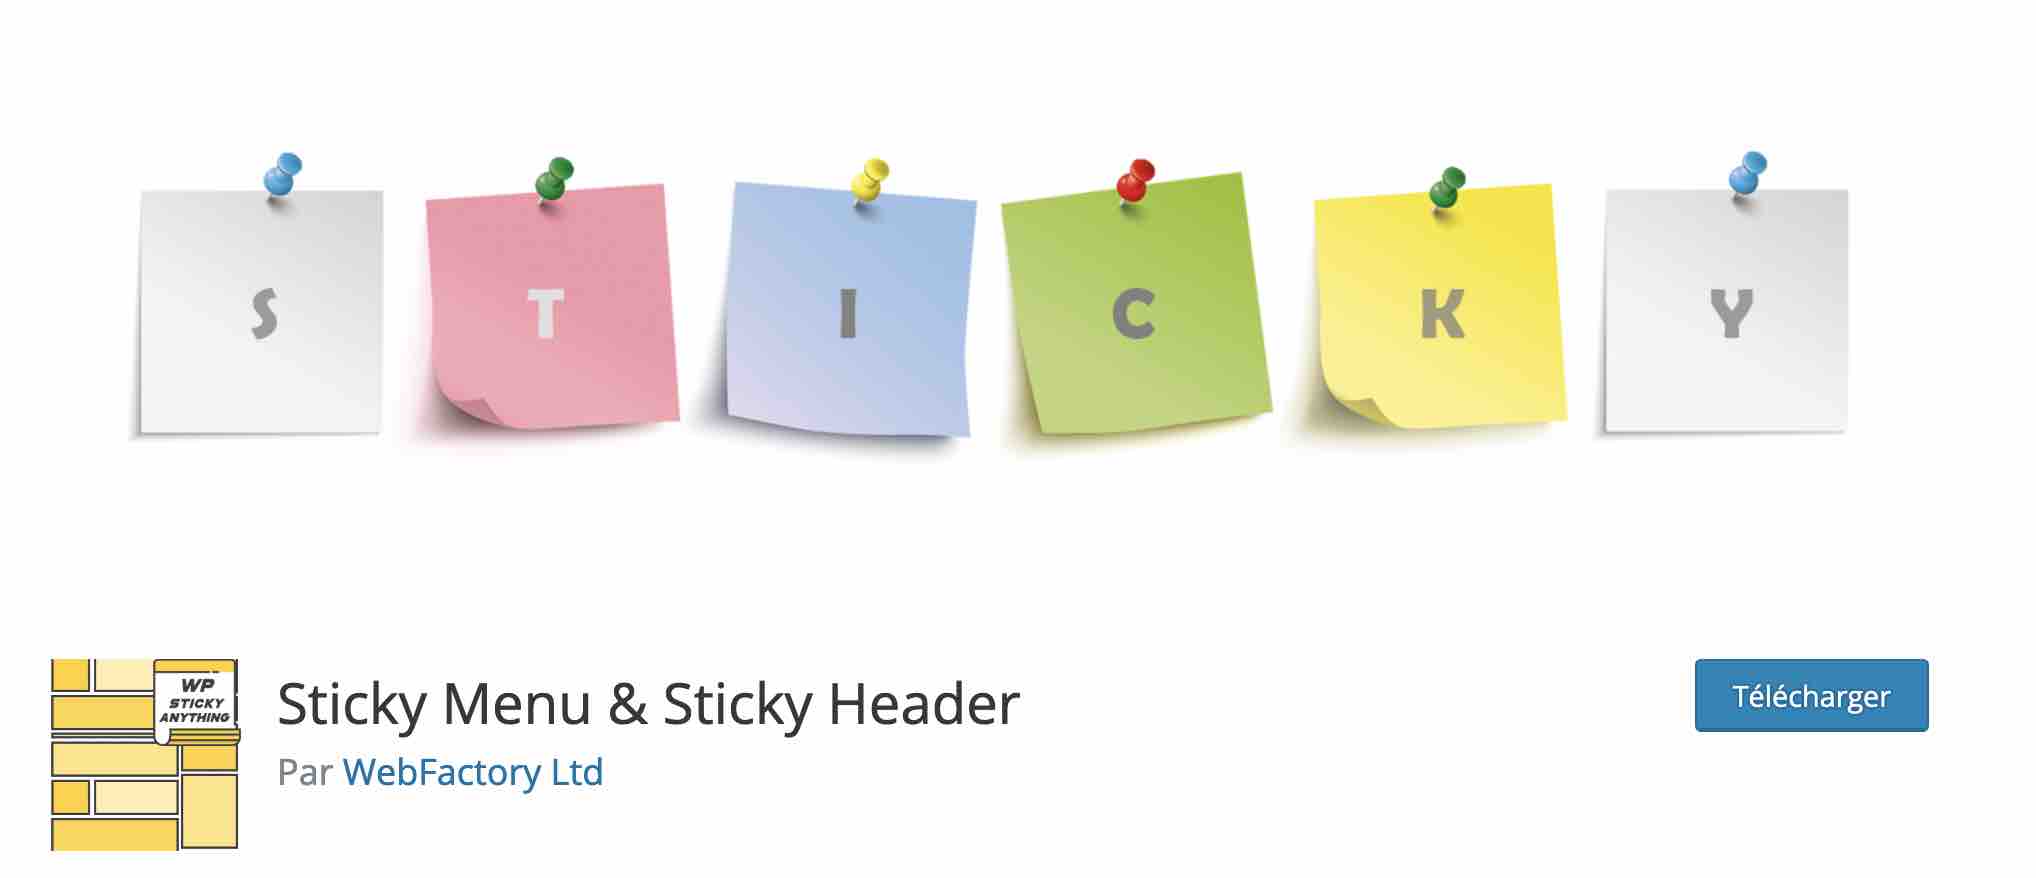 L'extension Sticky Menu & Sticky Header permet de créer un menu ou un élément flottant sur WordPress.